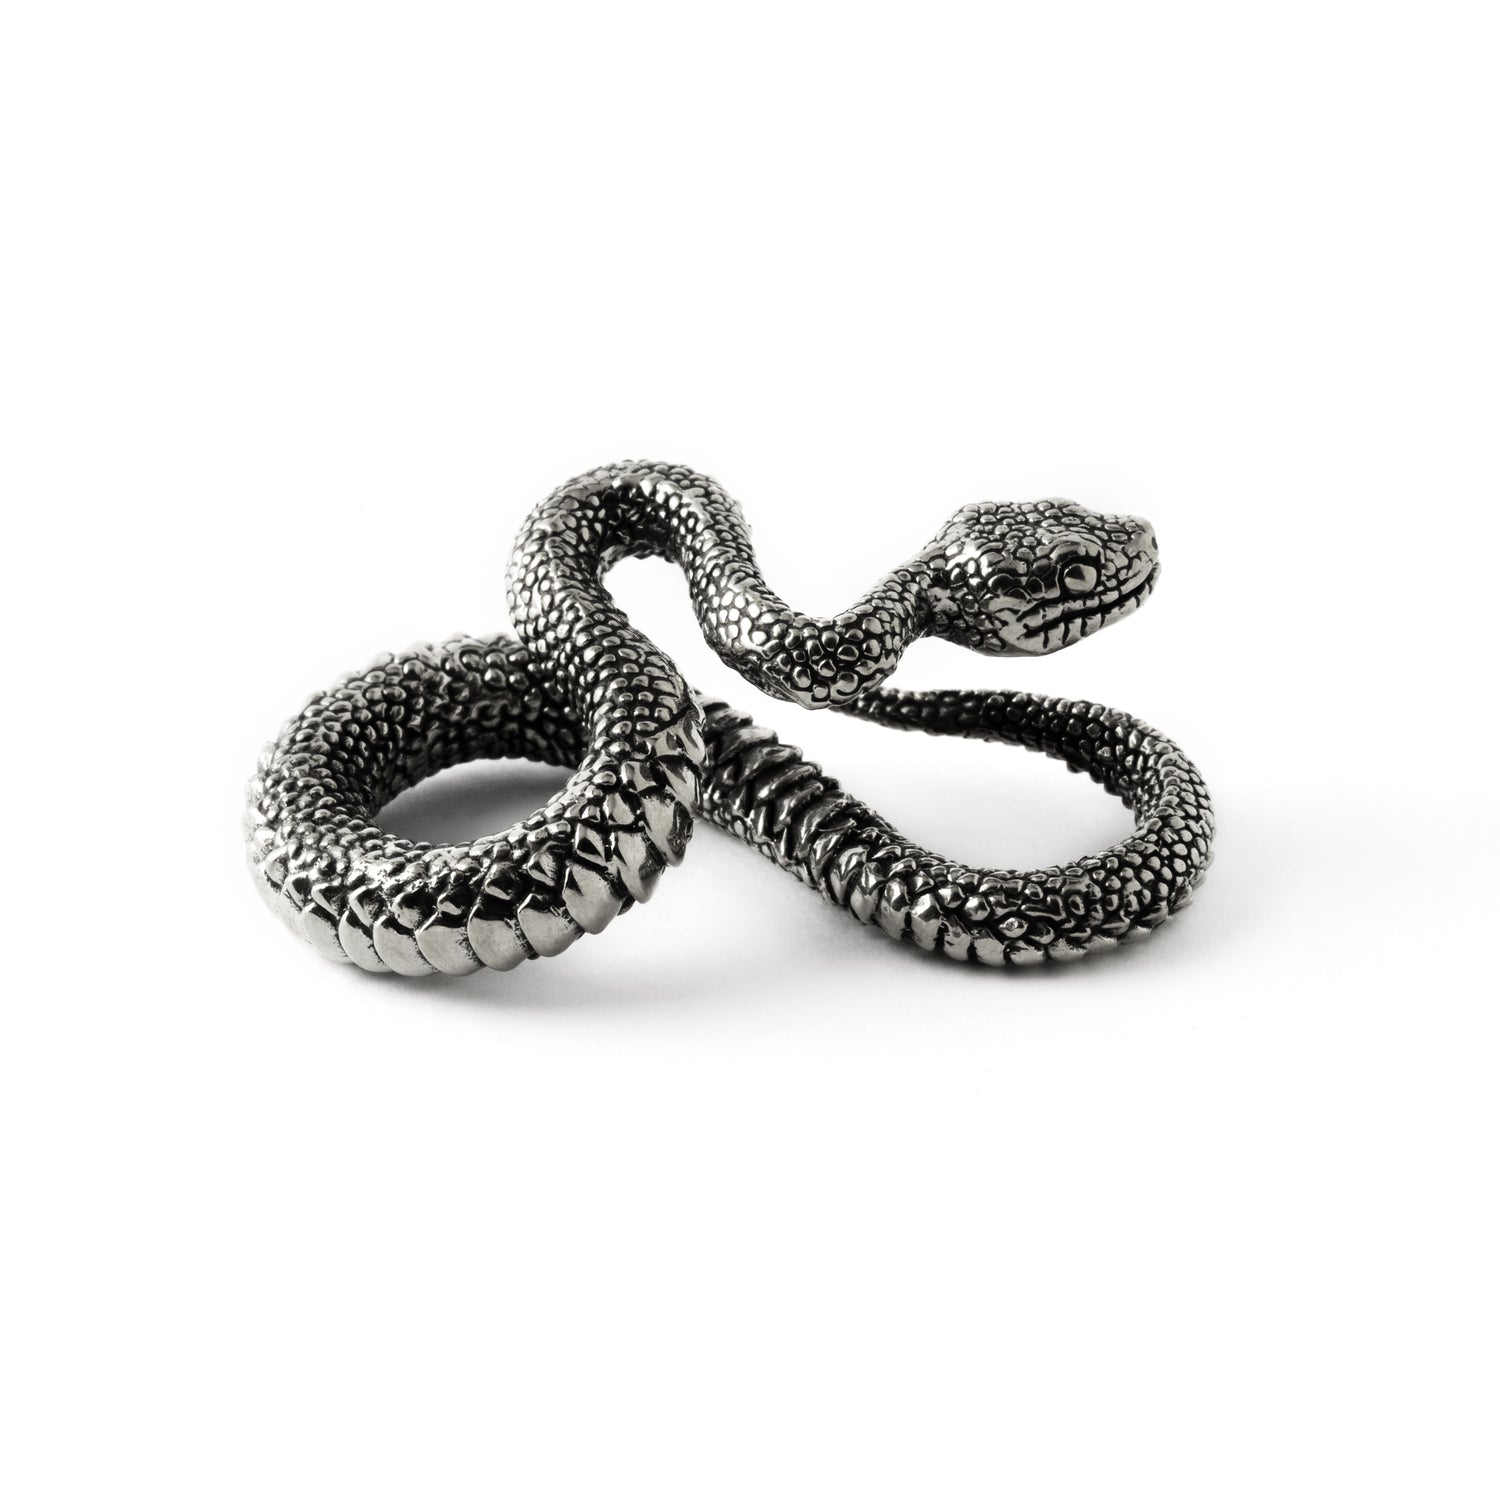 single silver brass snake ear weights hangers in infinity shape side view